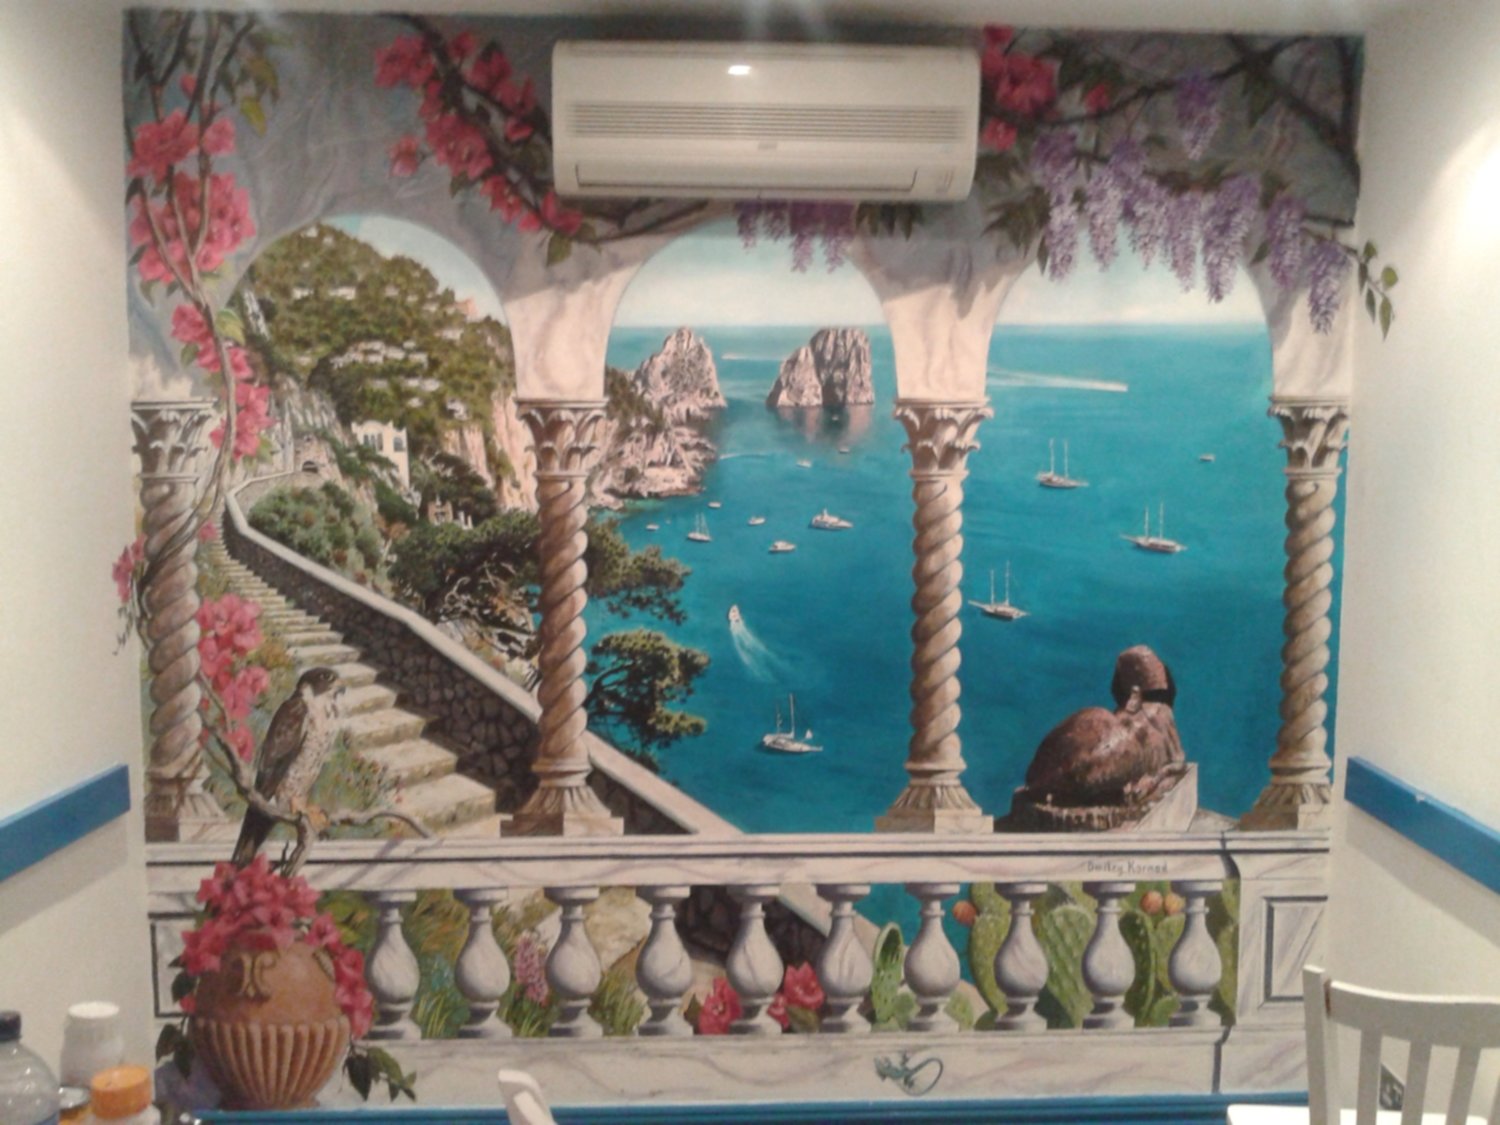 Mural of Capri painted in the restaurant Capri